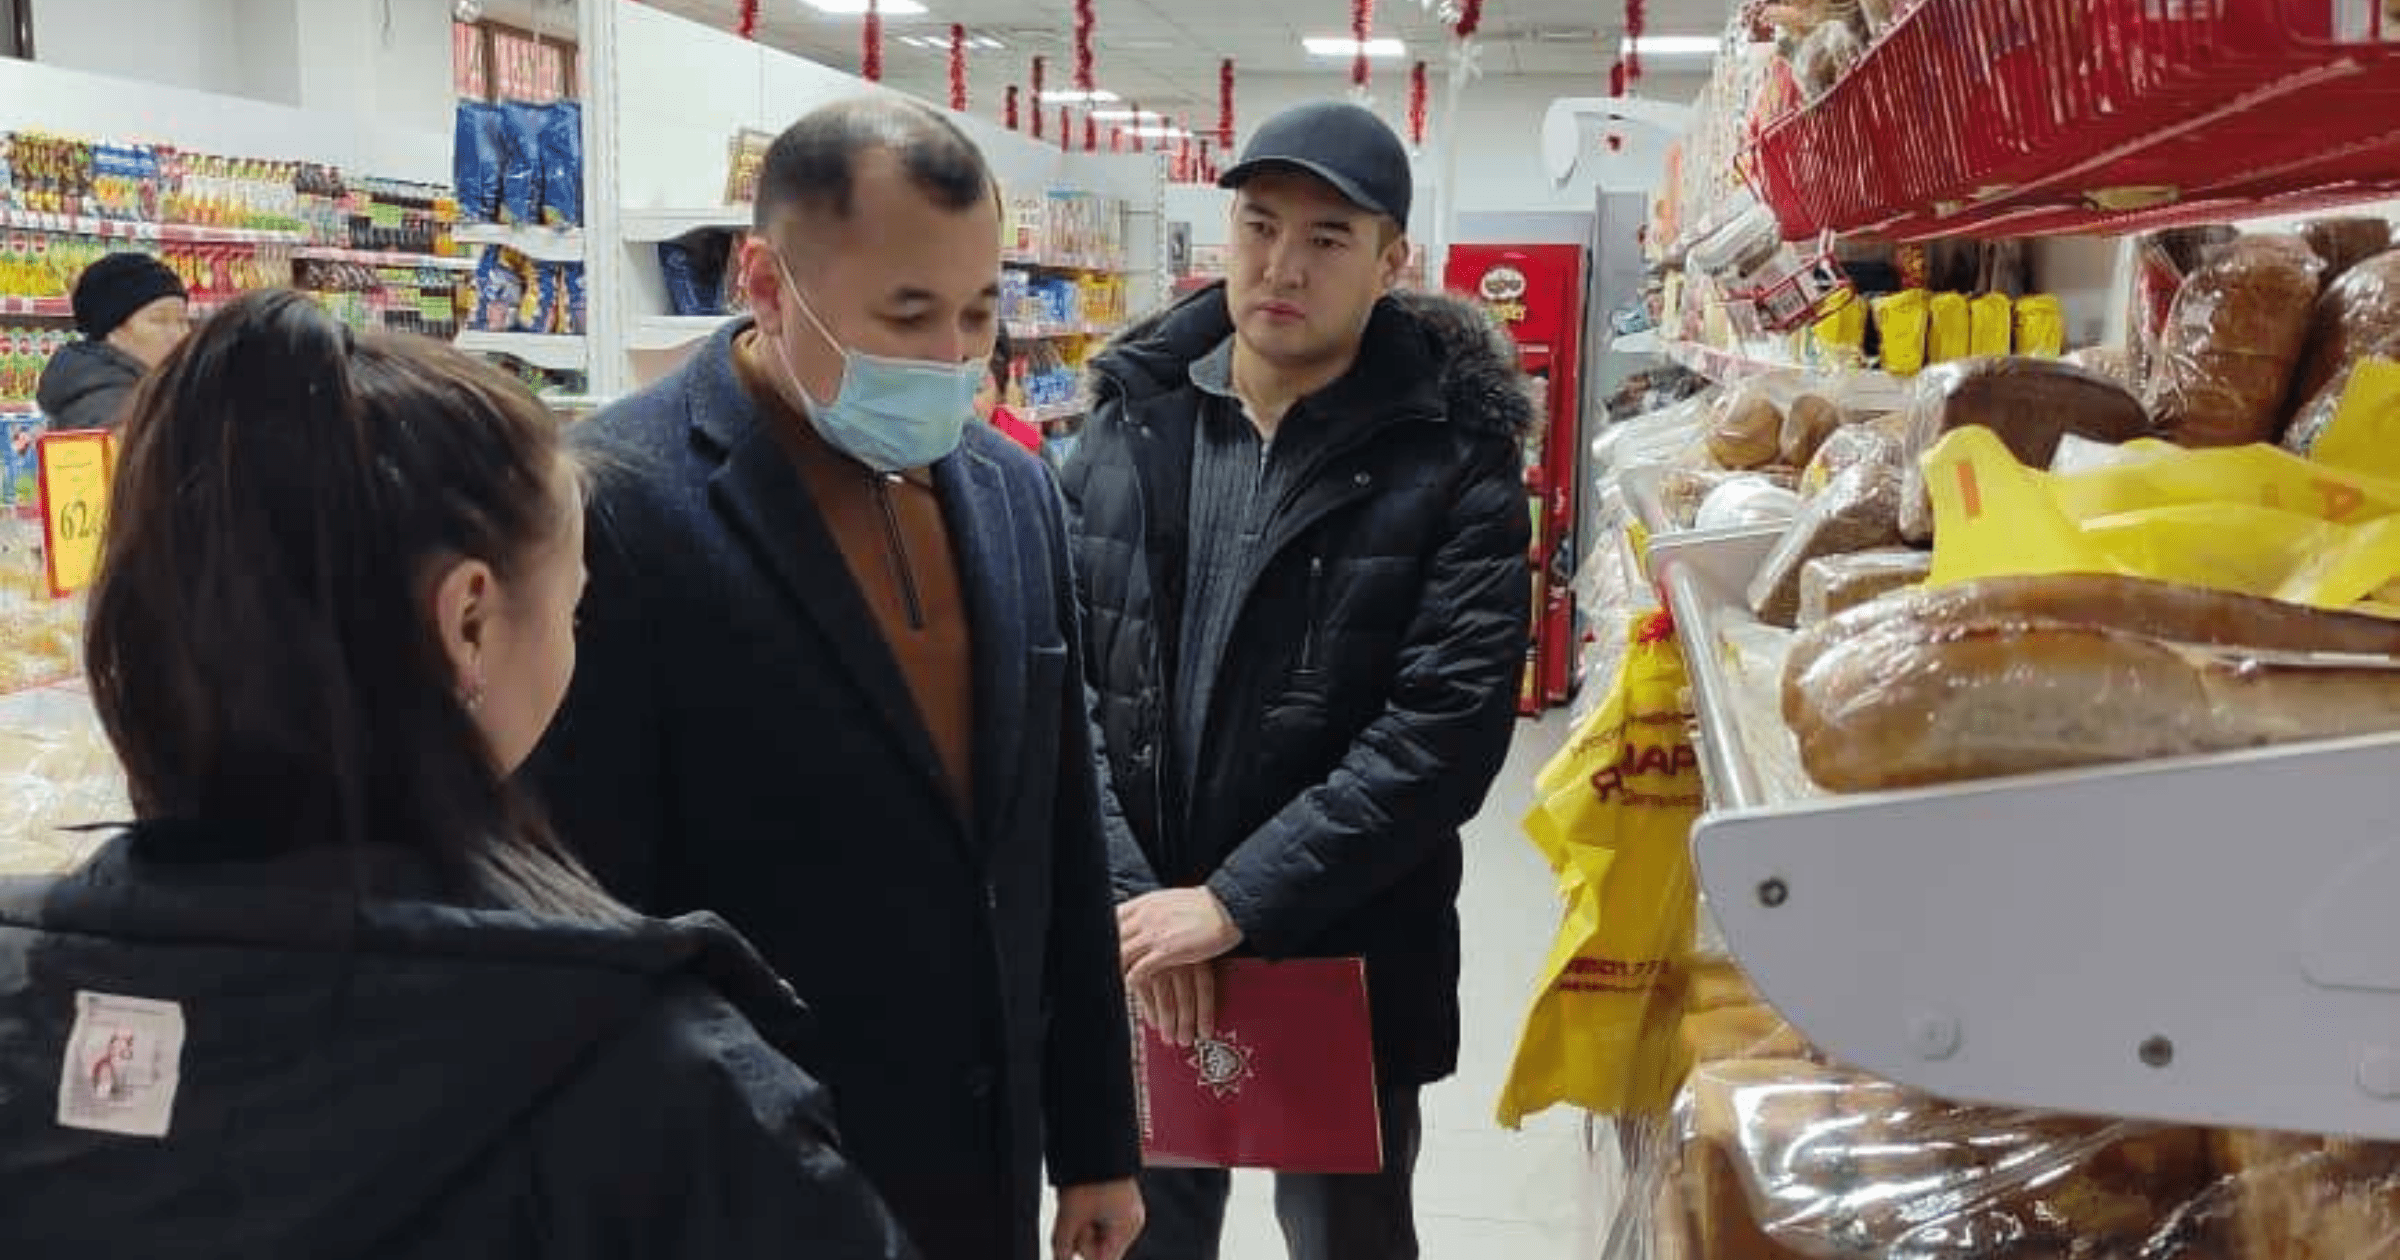 Ажиотажной скупки товаров в Кыргызстане нет – Госантимонополия